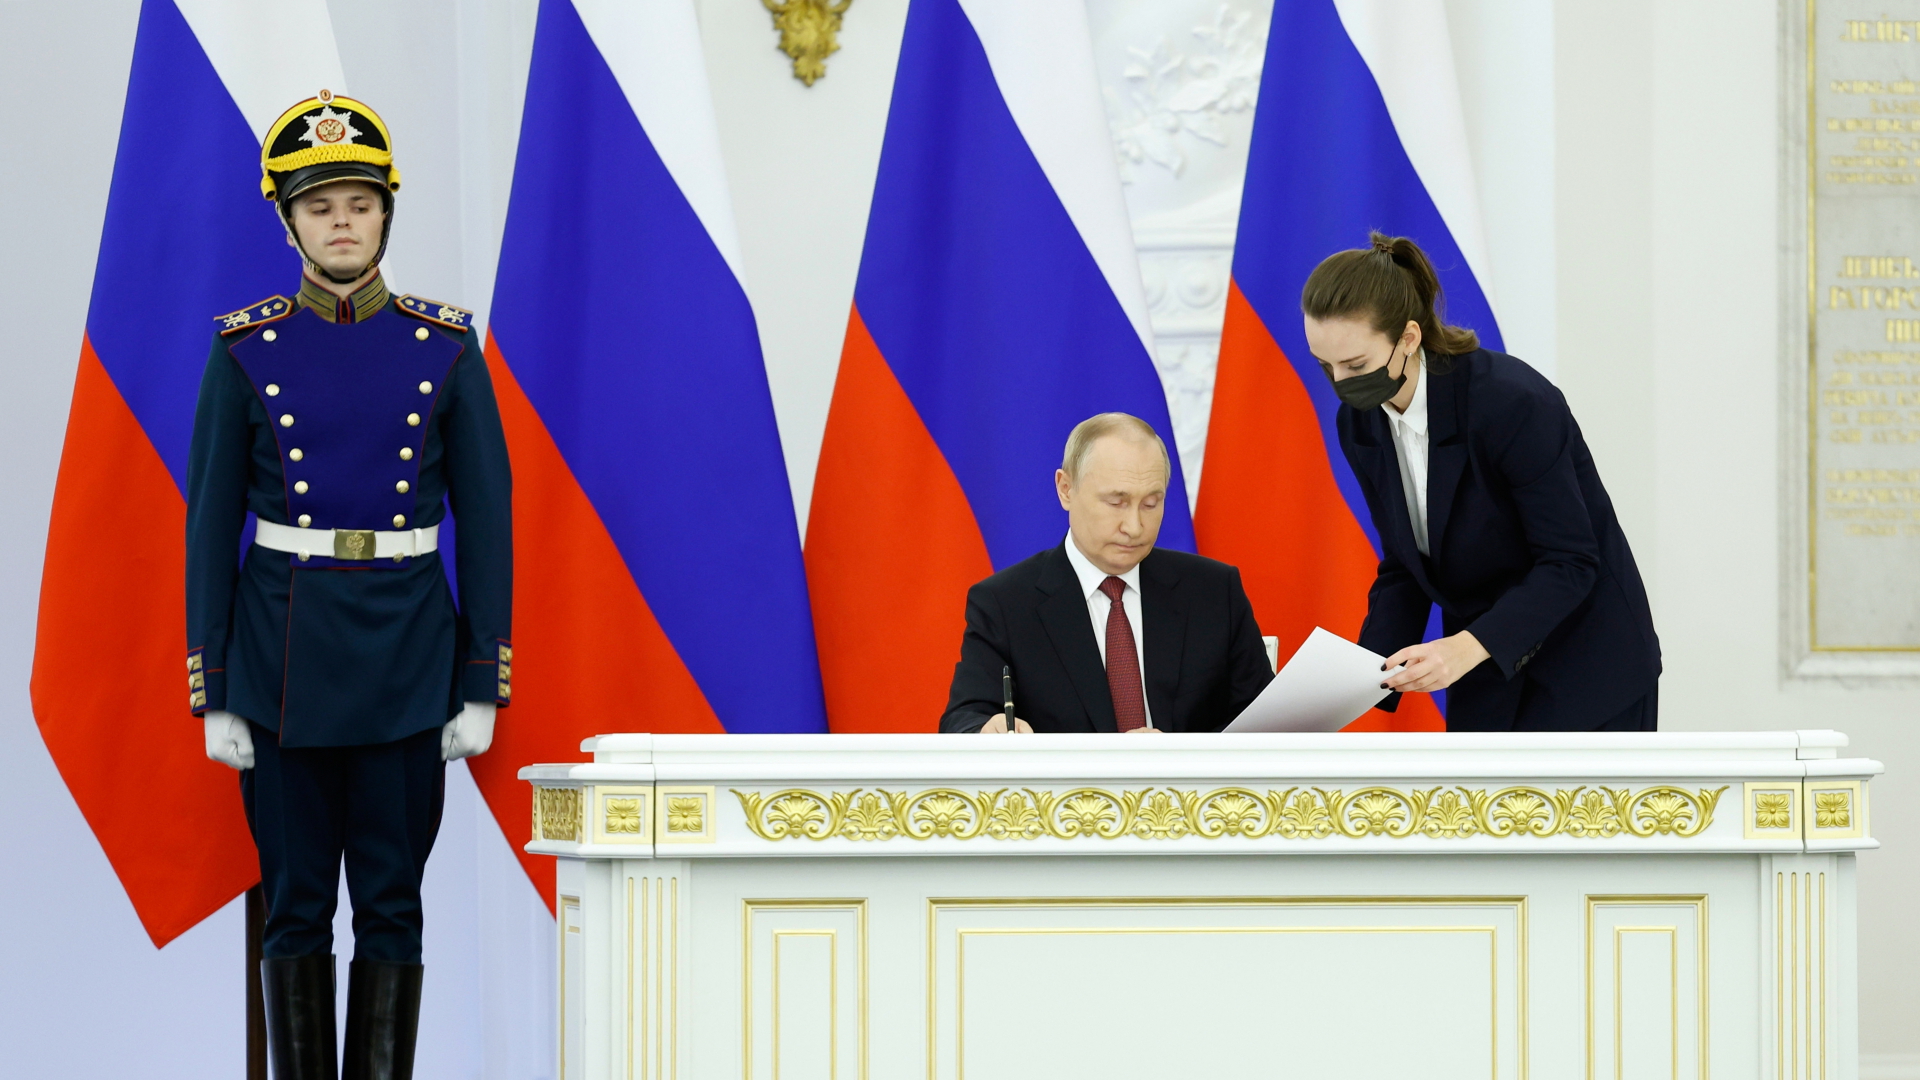 Der russische Präsident Putin unterschreibt am 30. September Verträge zur Annexion ukrainischer Gebiete. | dpa